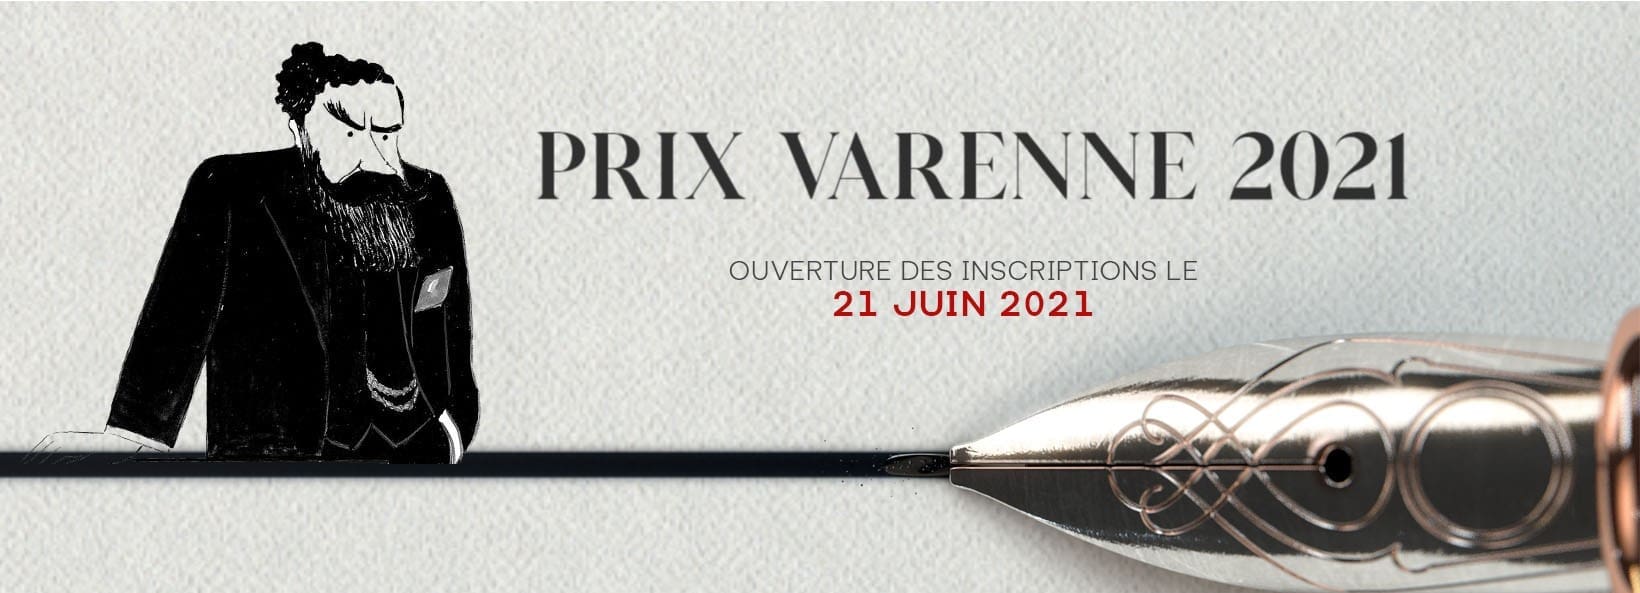 Fondation Varenne visuel2021 twitter 2